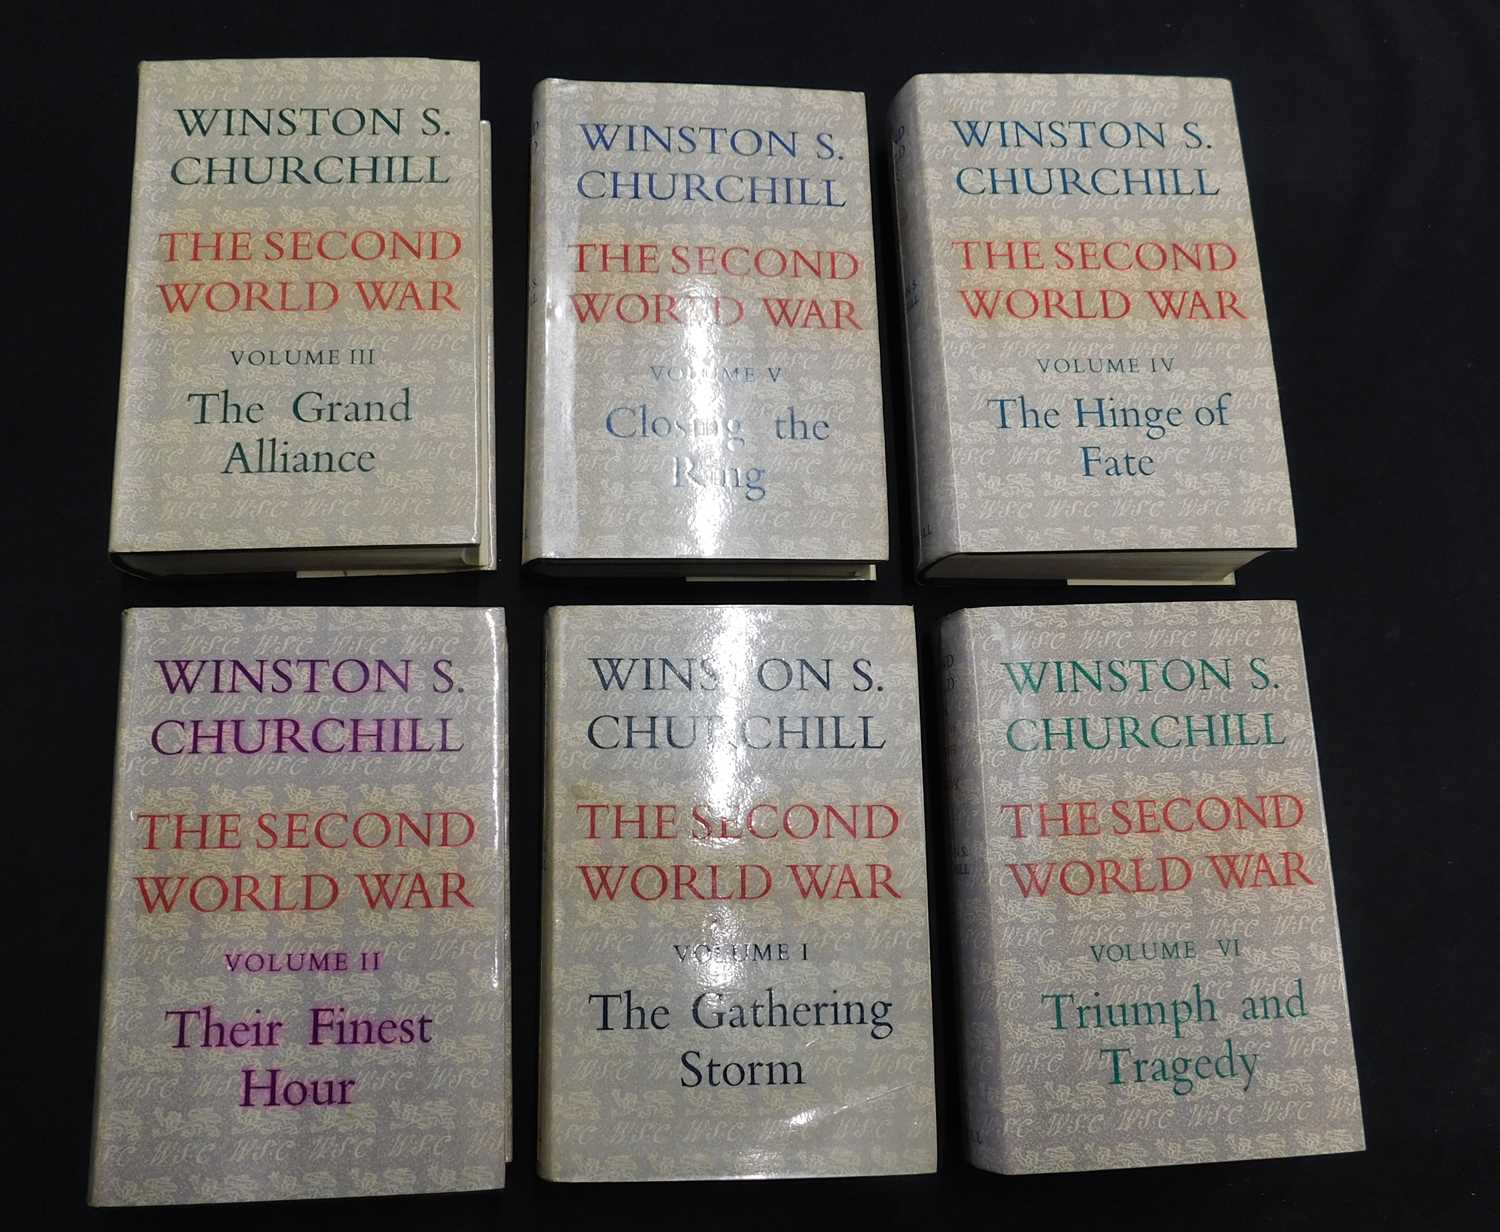 SIR WINSTON LEONARD SPENCER CHURCHILL: THE SECOND WORLD WAR, London, Cassell, 1948-54, 1st